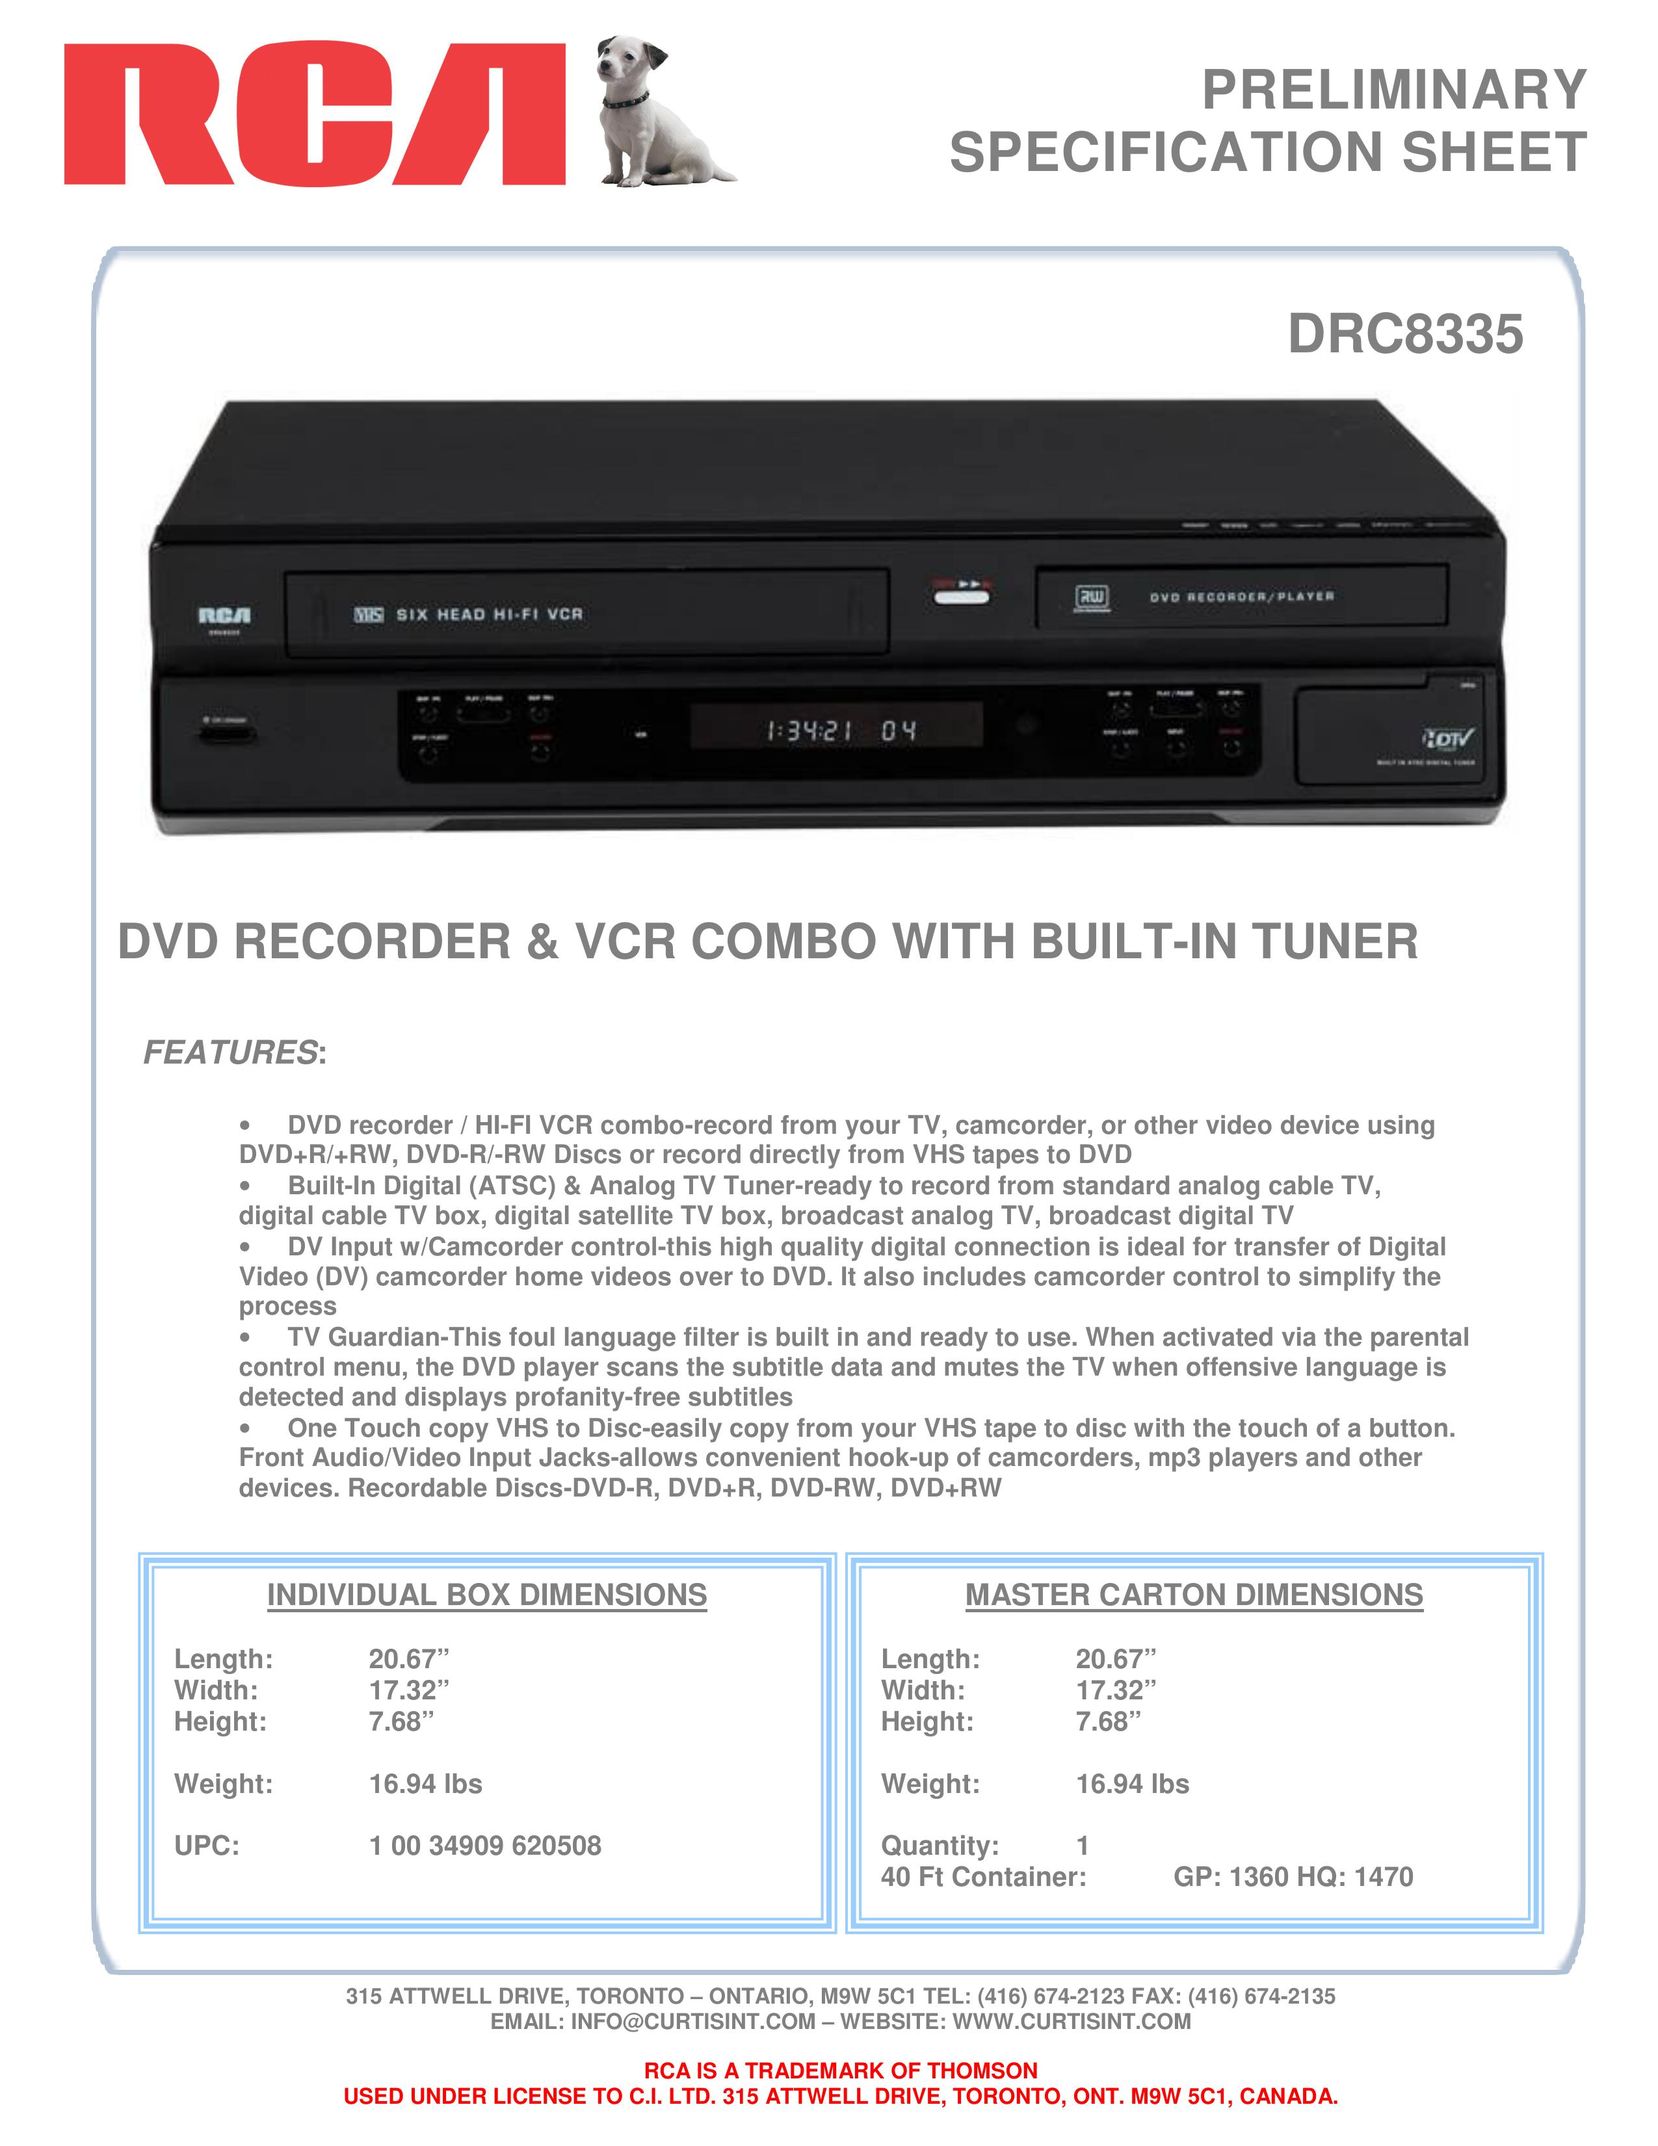 Curtis DRC8335 DVD Recorder User Manual